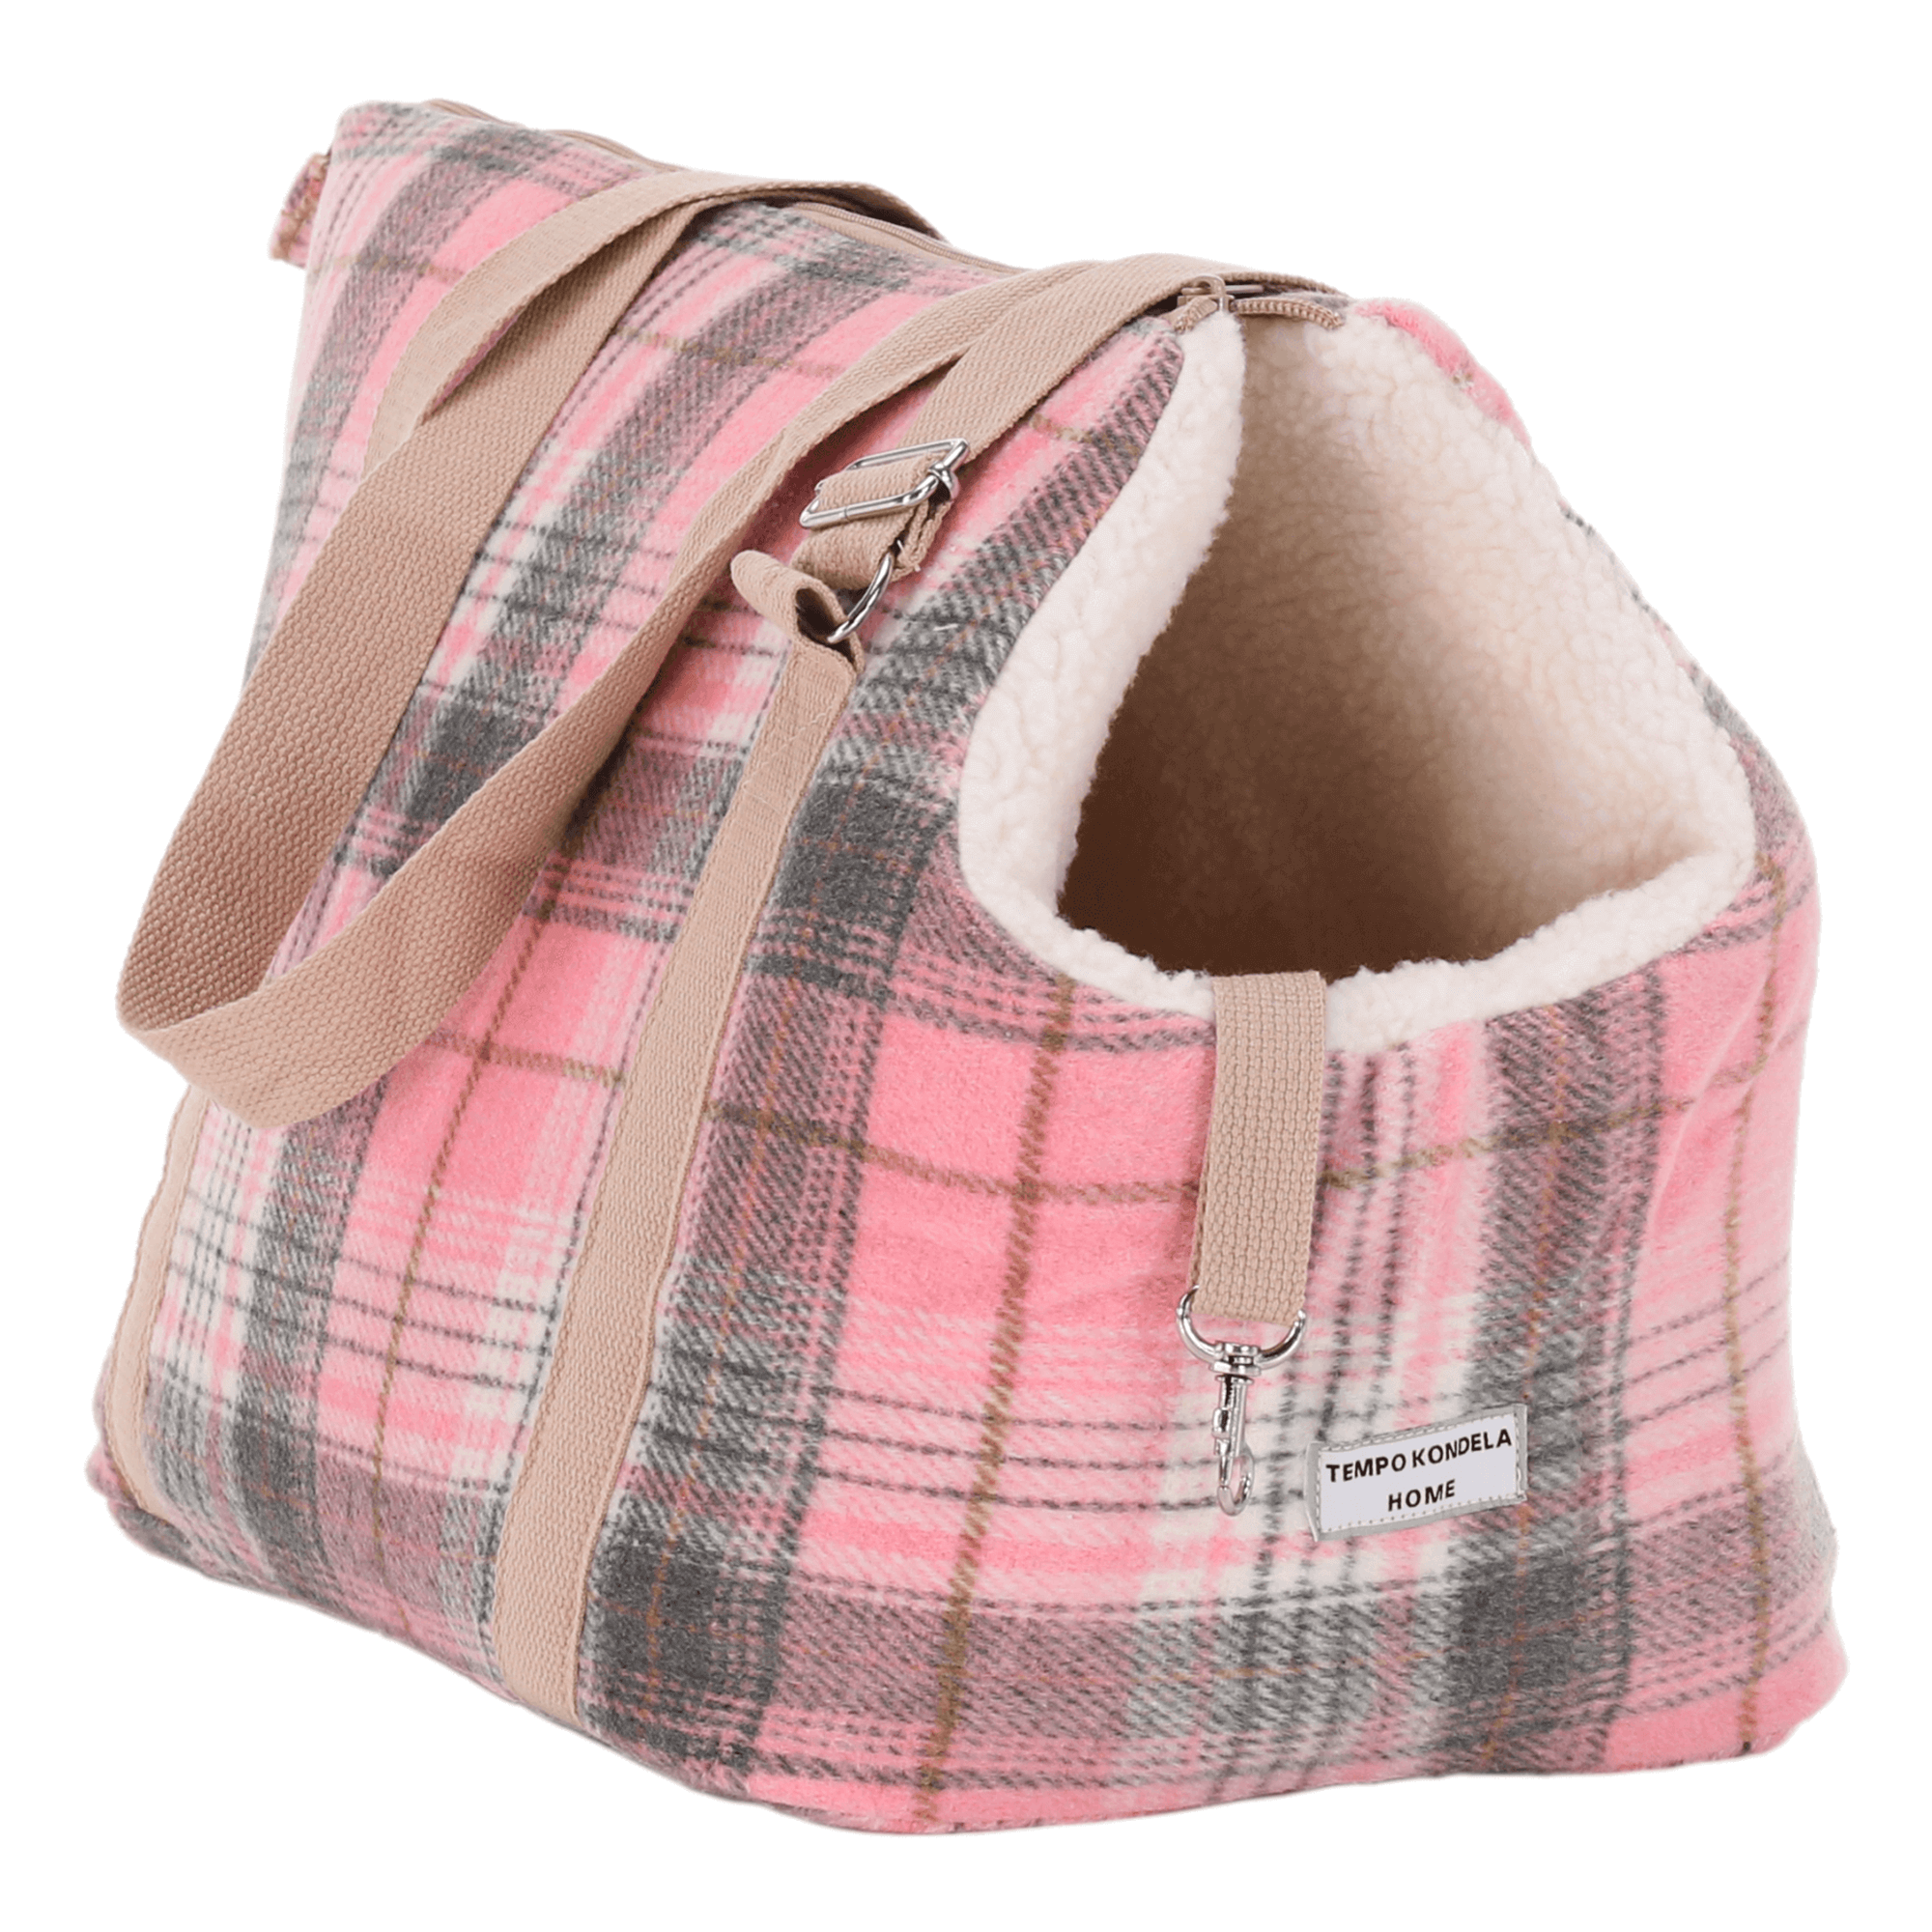 TEMPO-KONDELA MANIK TYP 3, kutyahordozó táska, nagy, rózsaszín/mintás, 45x28x33cm